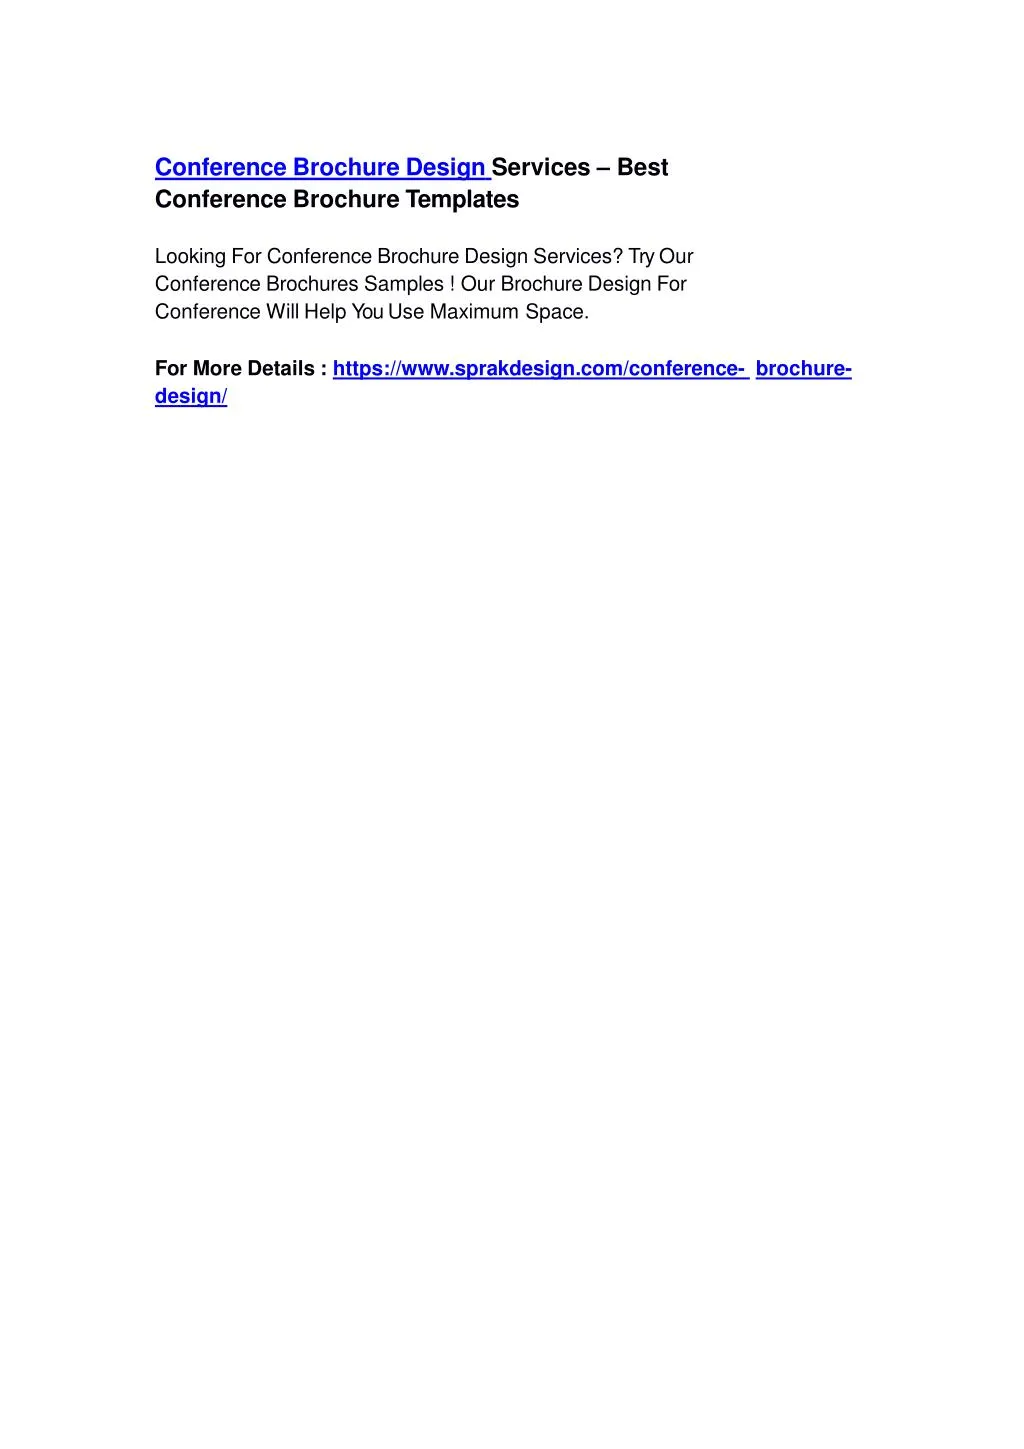 conference brochure design services best n.